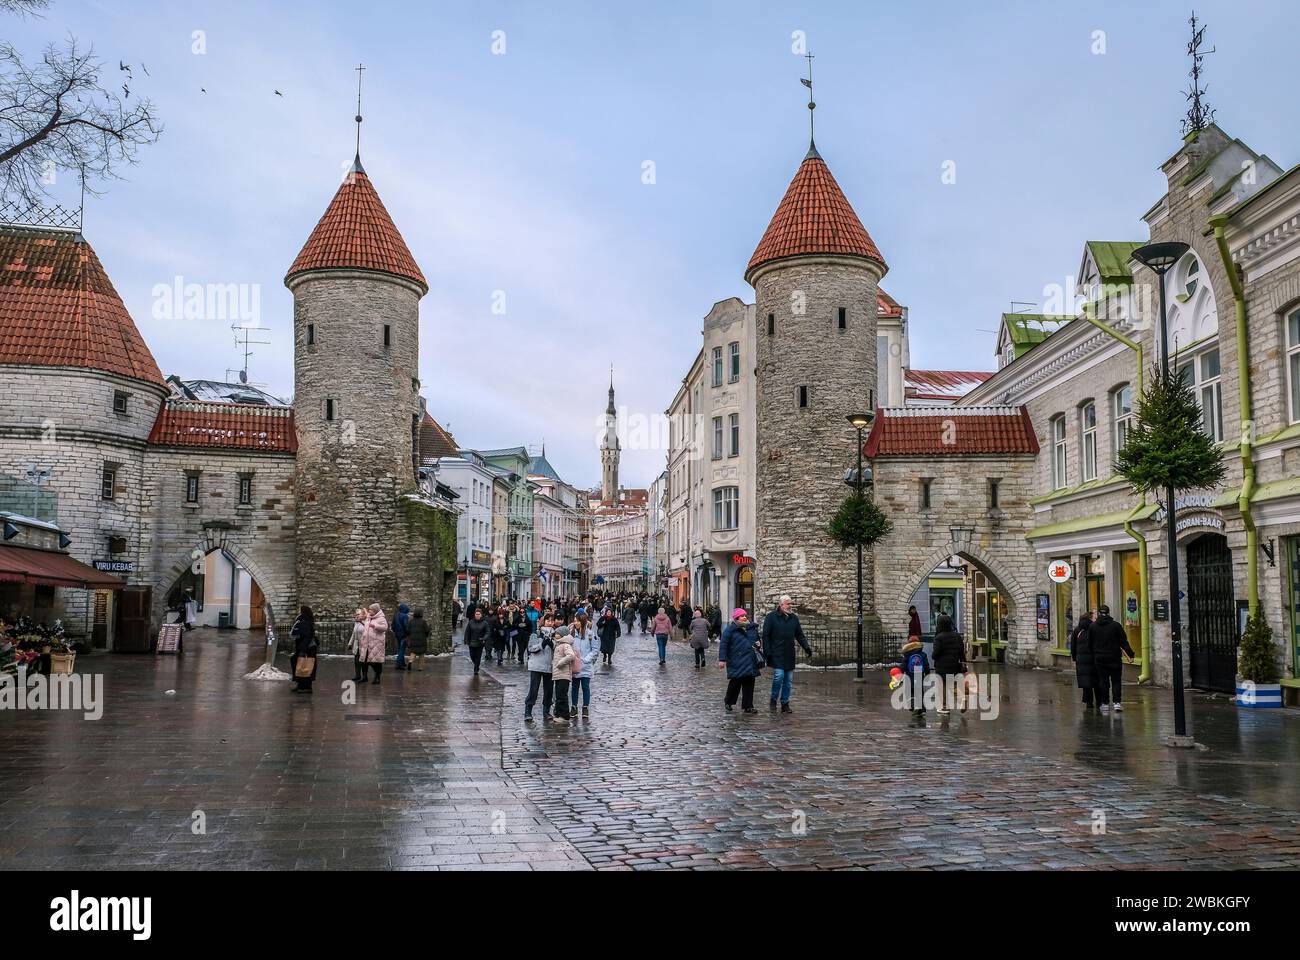 Tallinn, Estonie - Vieille ville de Tallinn, porte d'argile, tours de guet de la ville médiévale porte Viru, le Viru est la principale rue commerçante de la ville, derrière la tour de la mairie sur la place de la mairie. Banque D'Images